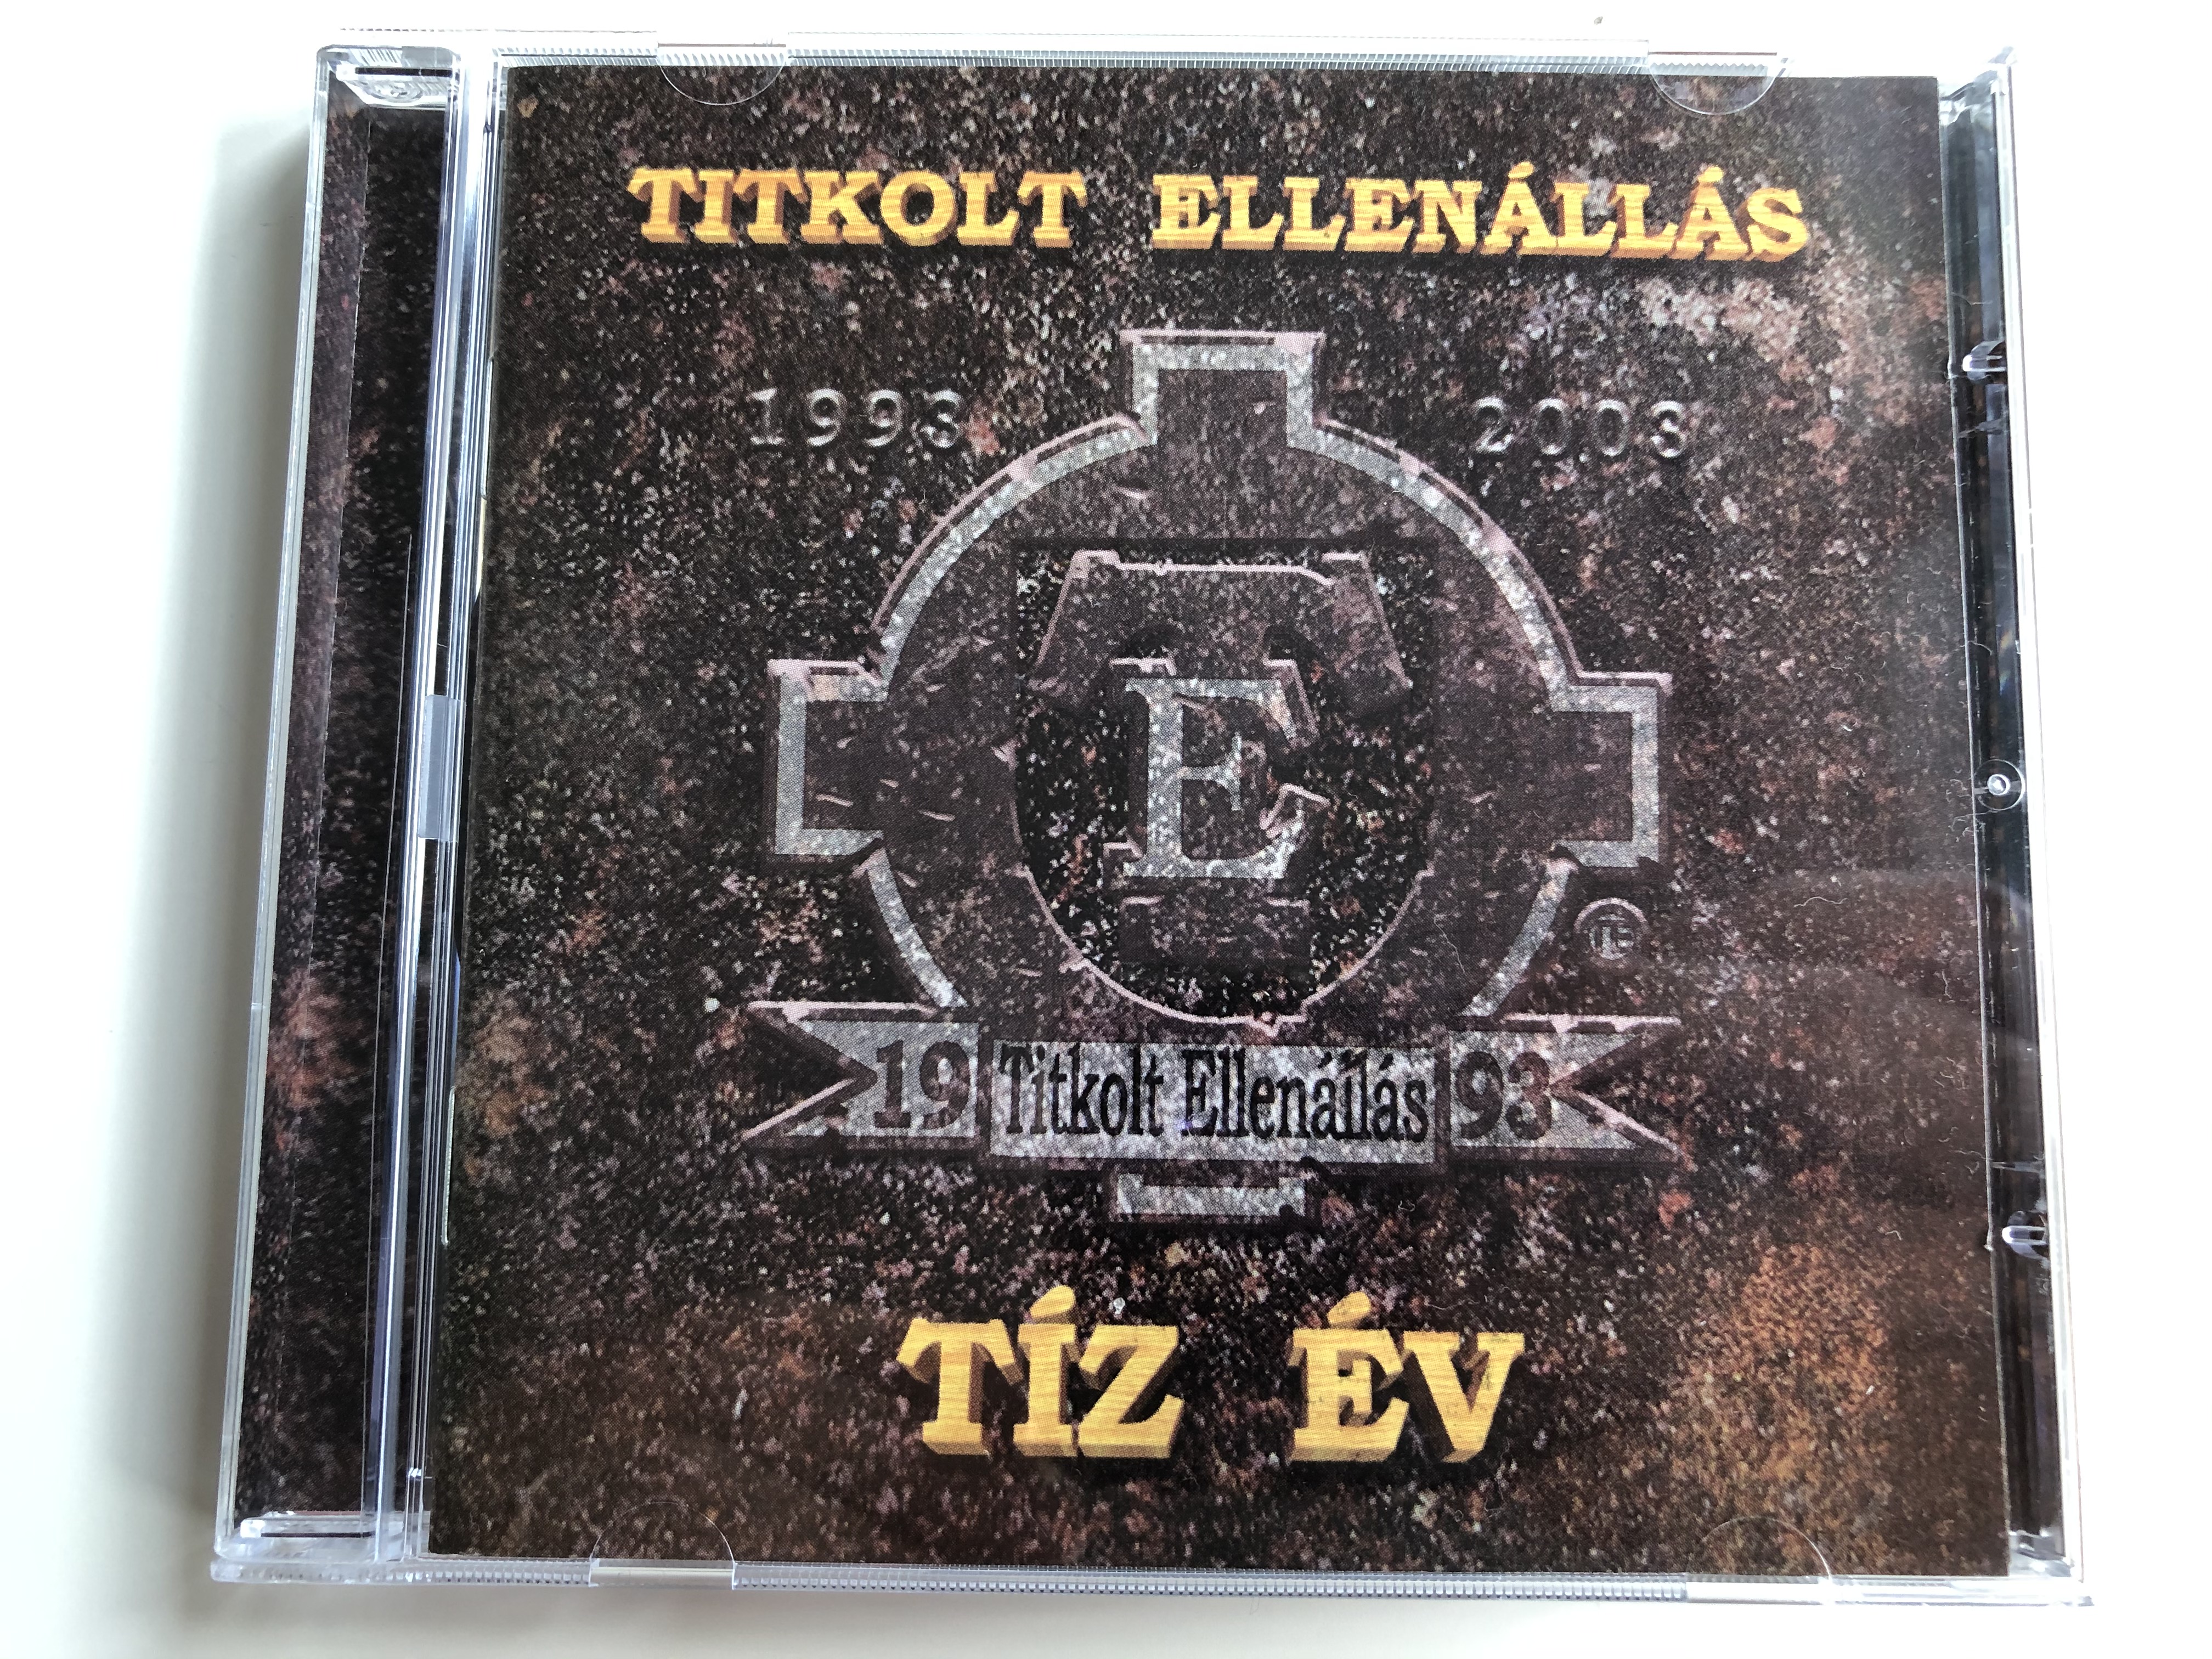 titkolt-ellen-ll-s-1993-t-z-v-rockworld-audio-cd-2003-te004-1-.jpg